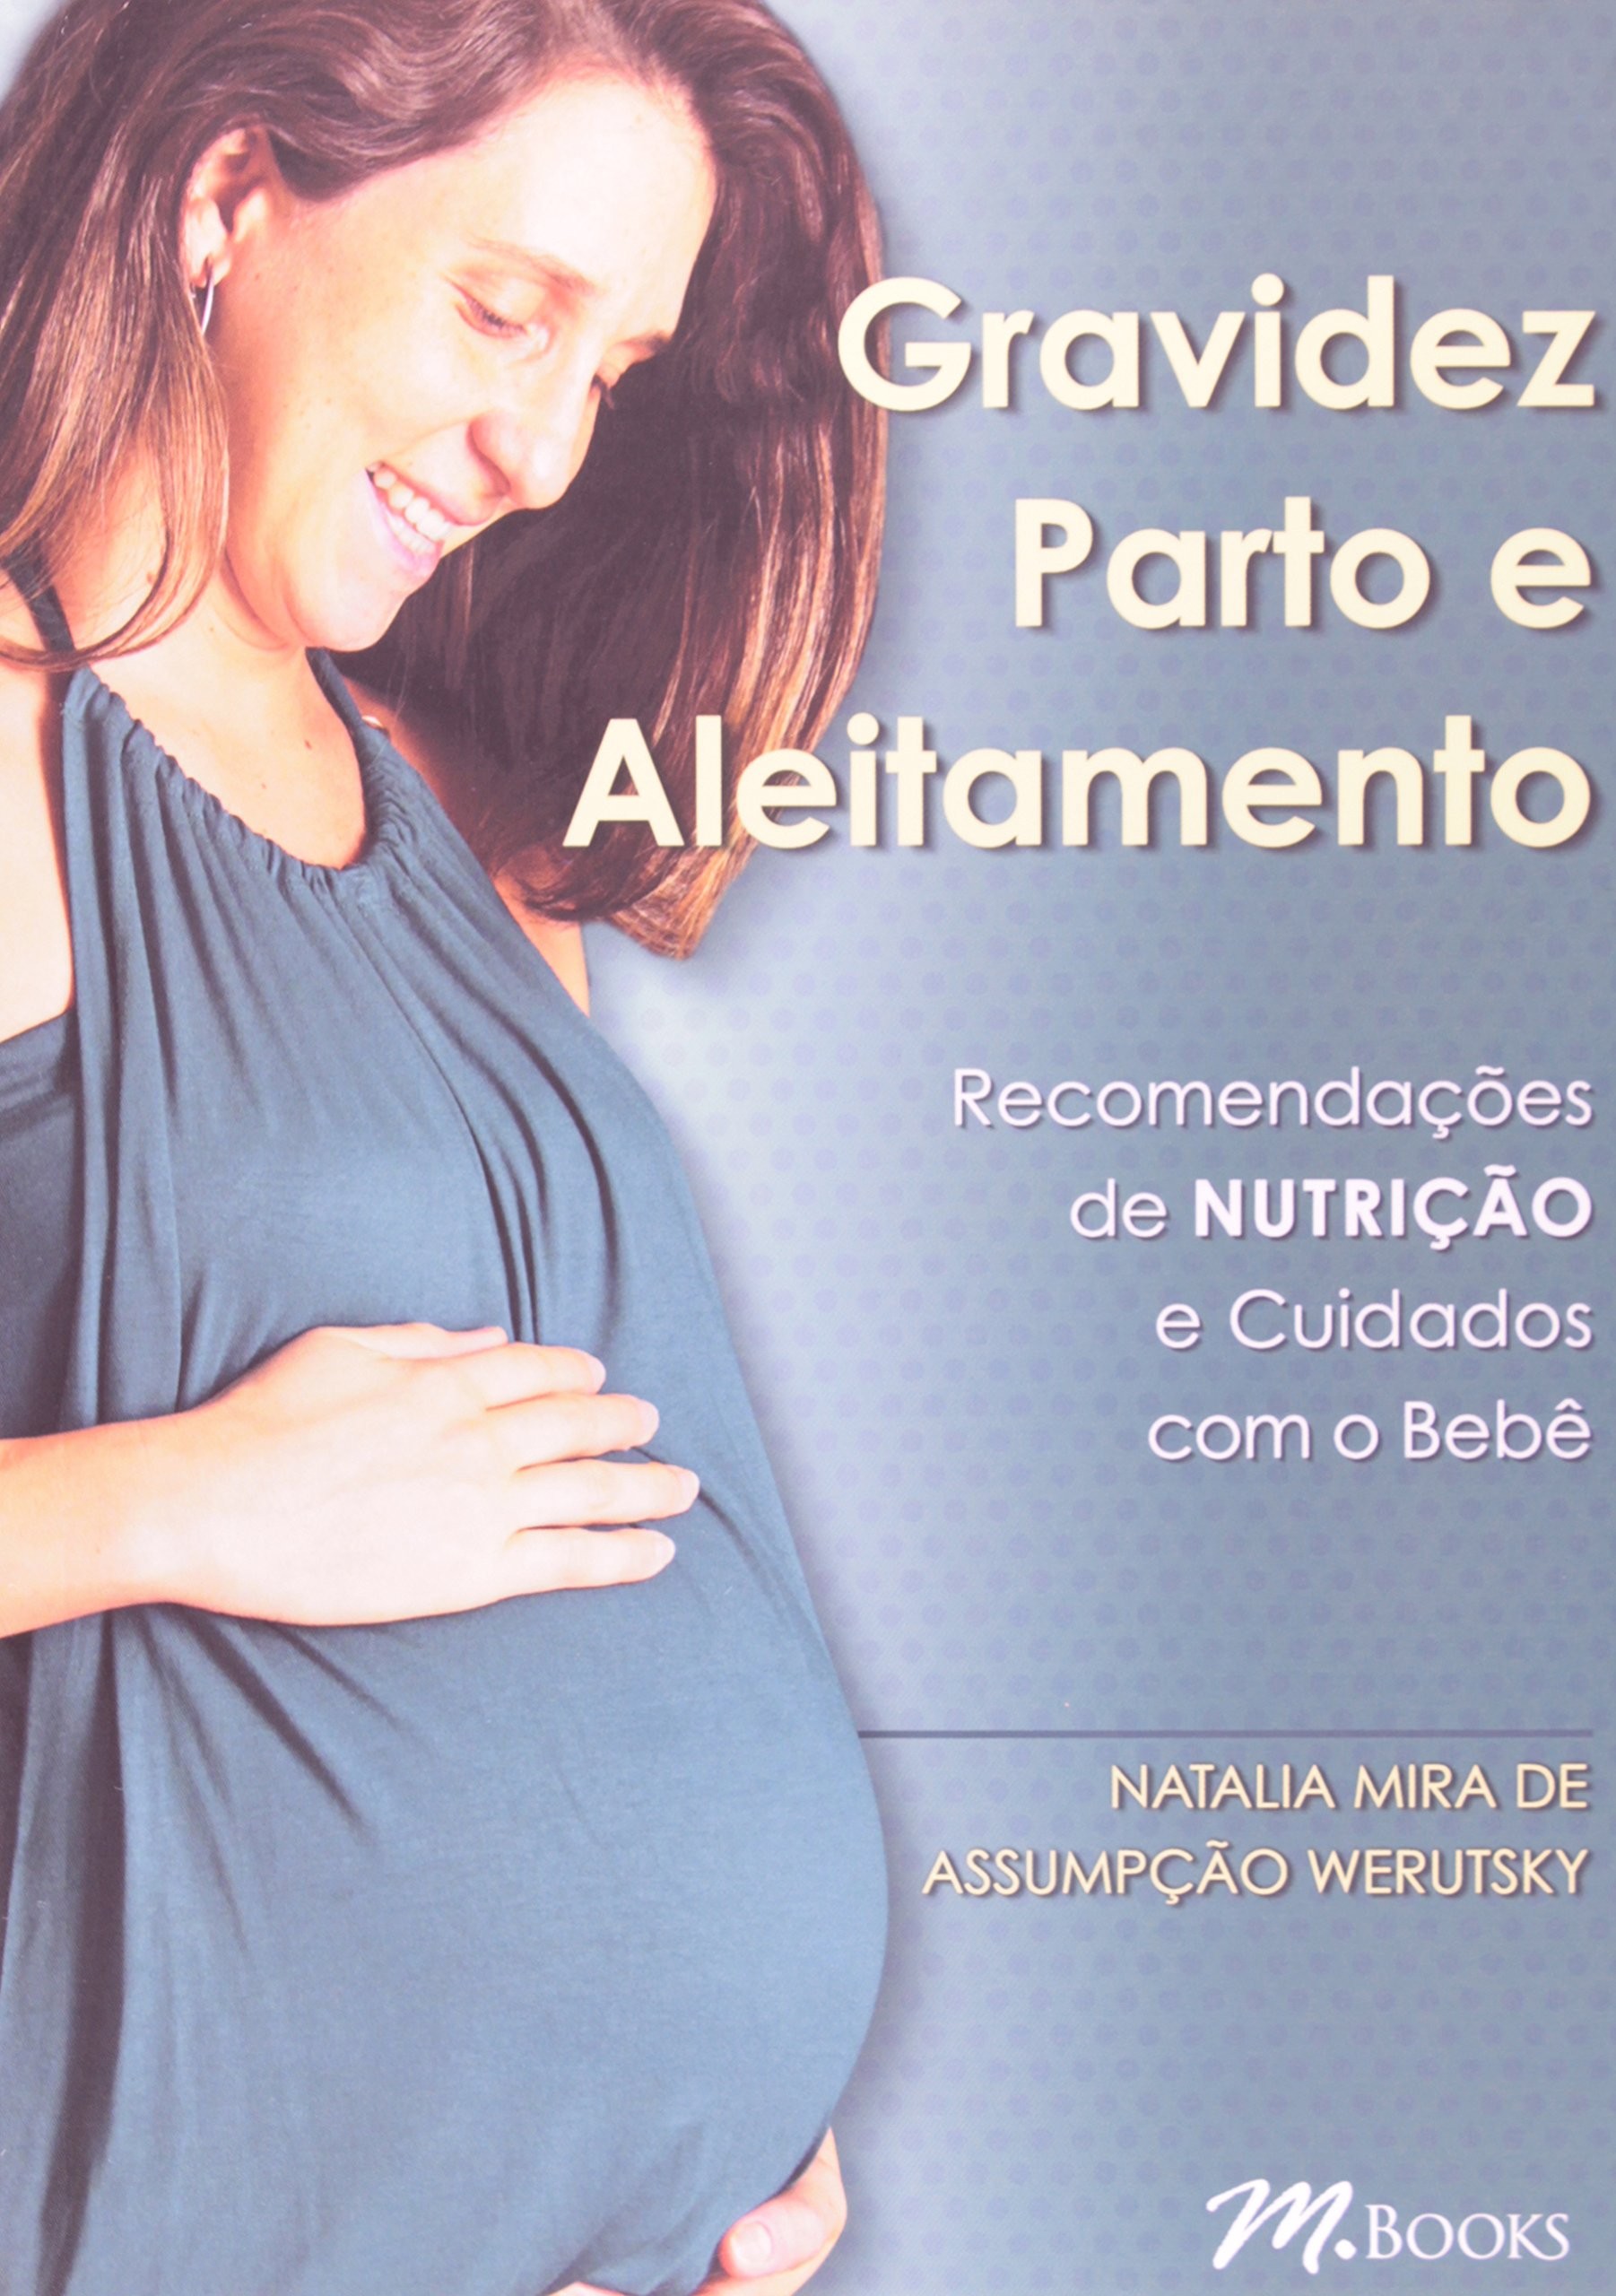 Gravidez Parto E Aleitamento - Recomendações De Nutrição E Cuidados Com O Bebê